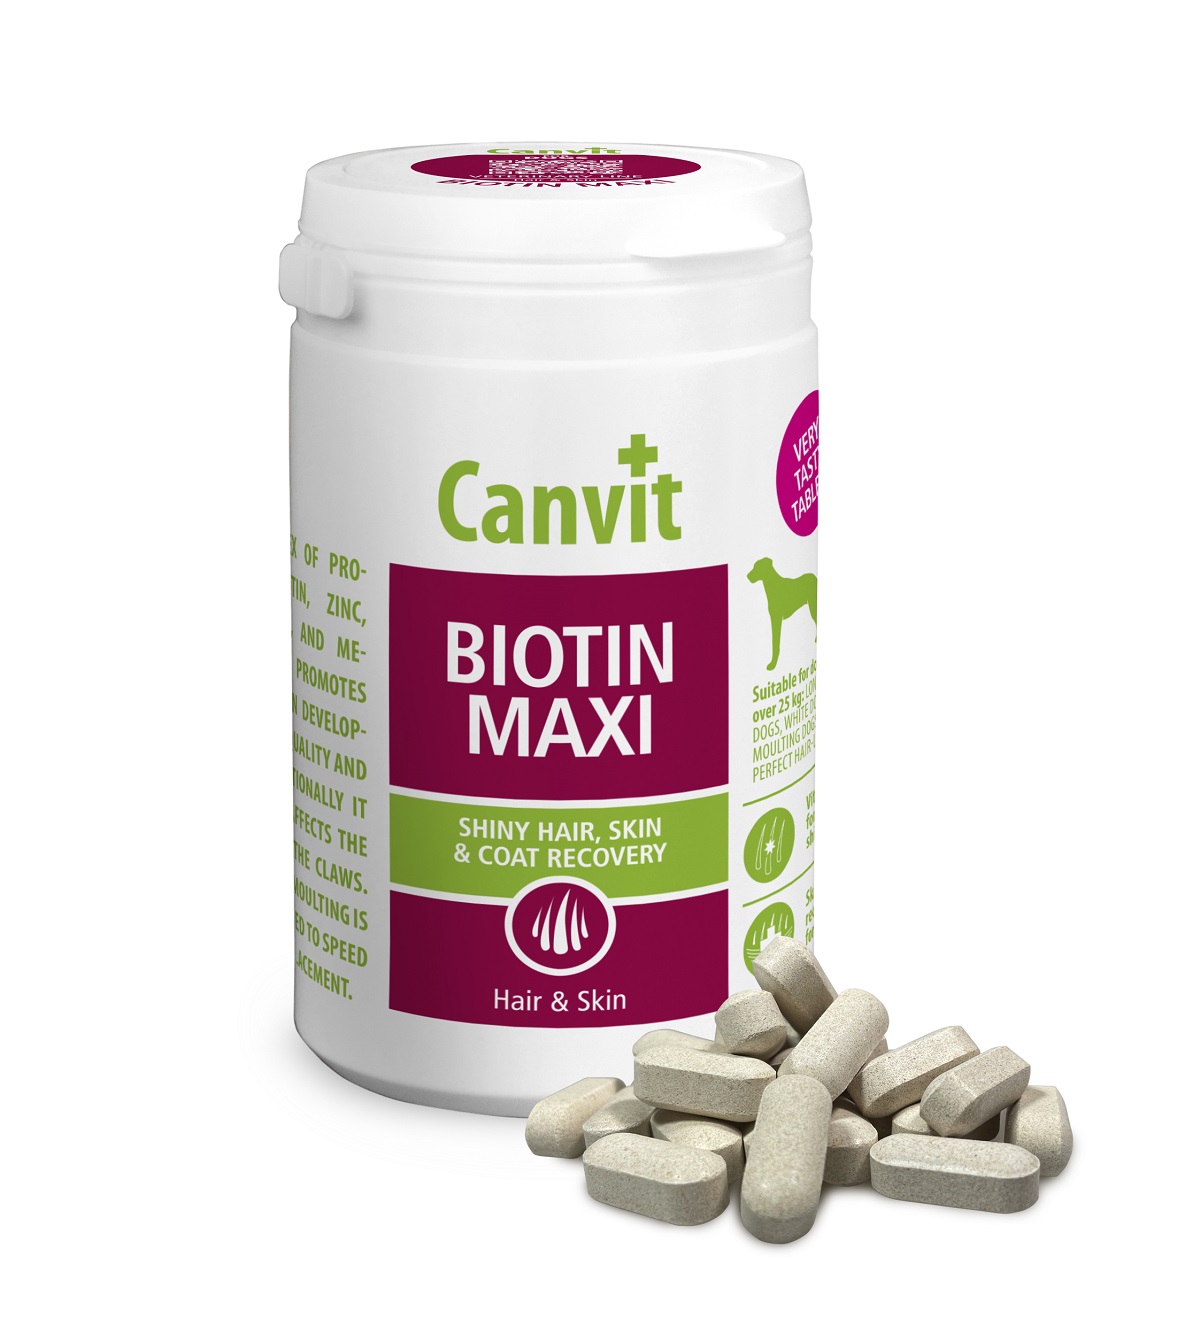 CANVIT Biotin Maxi pro psy tbl 500g